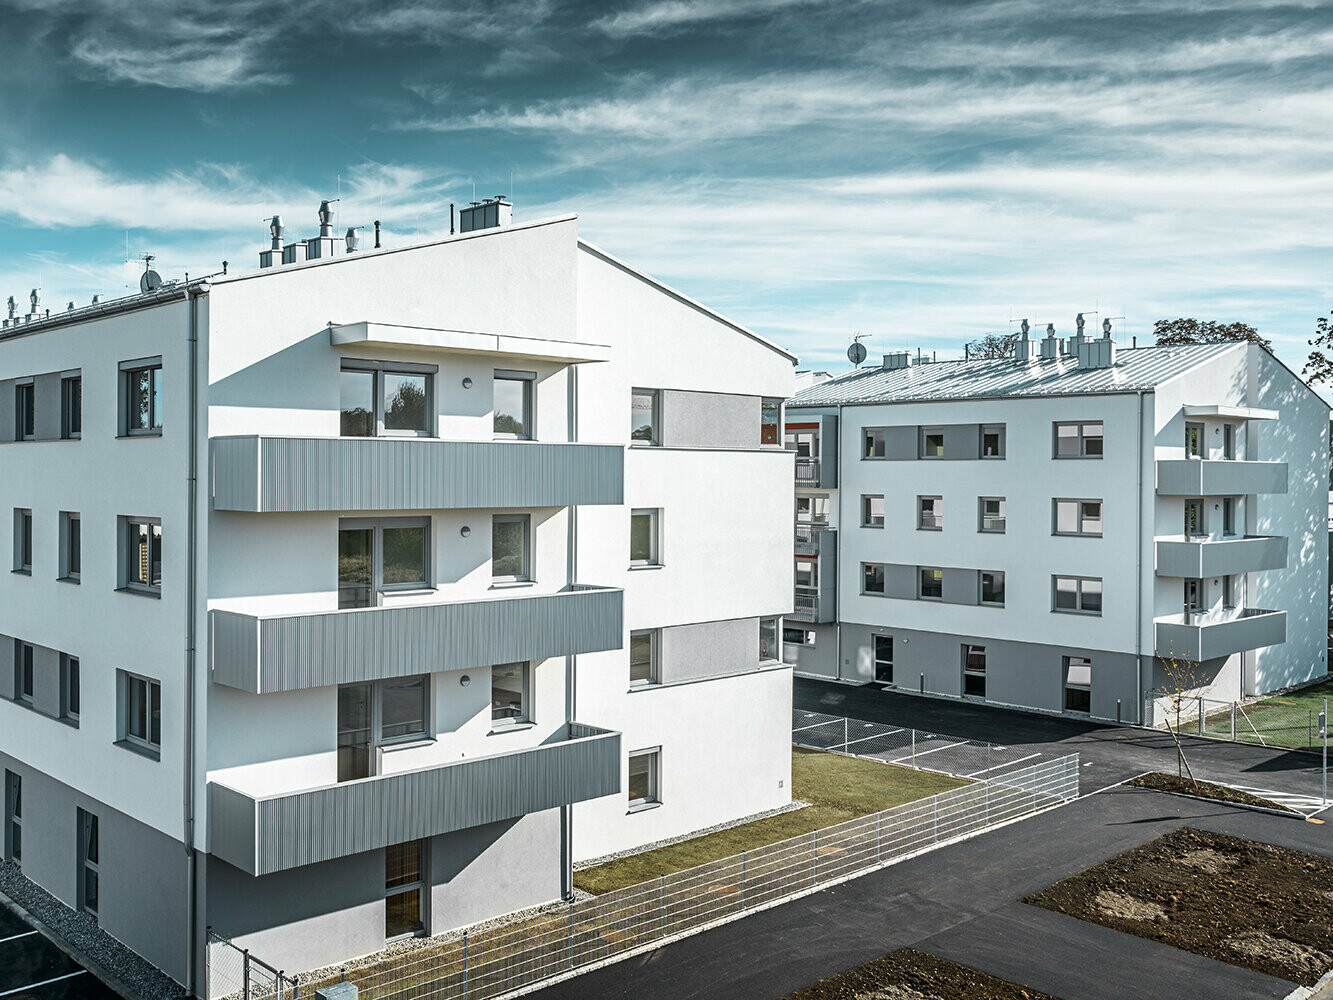 Moderne boligbyggeri med hvid facade og balkoner med takket PREFA-profil i sølvmetallic